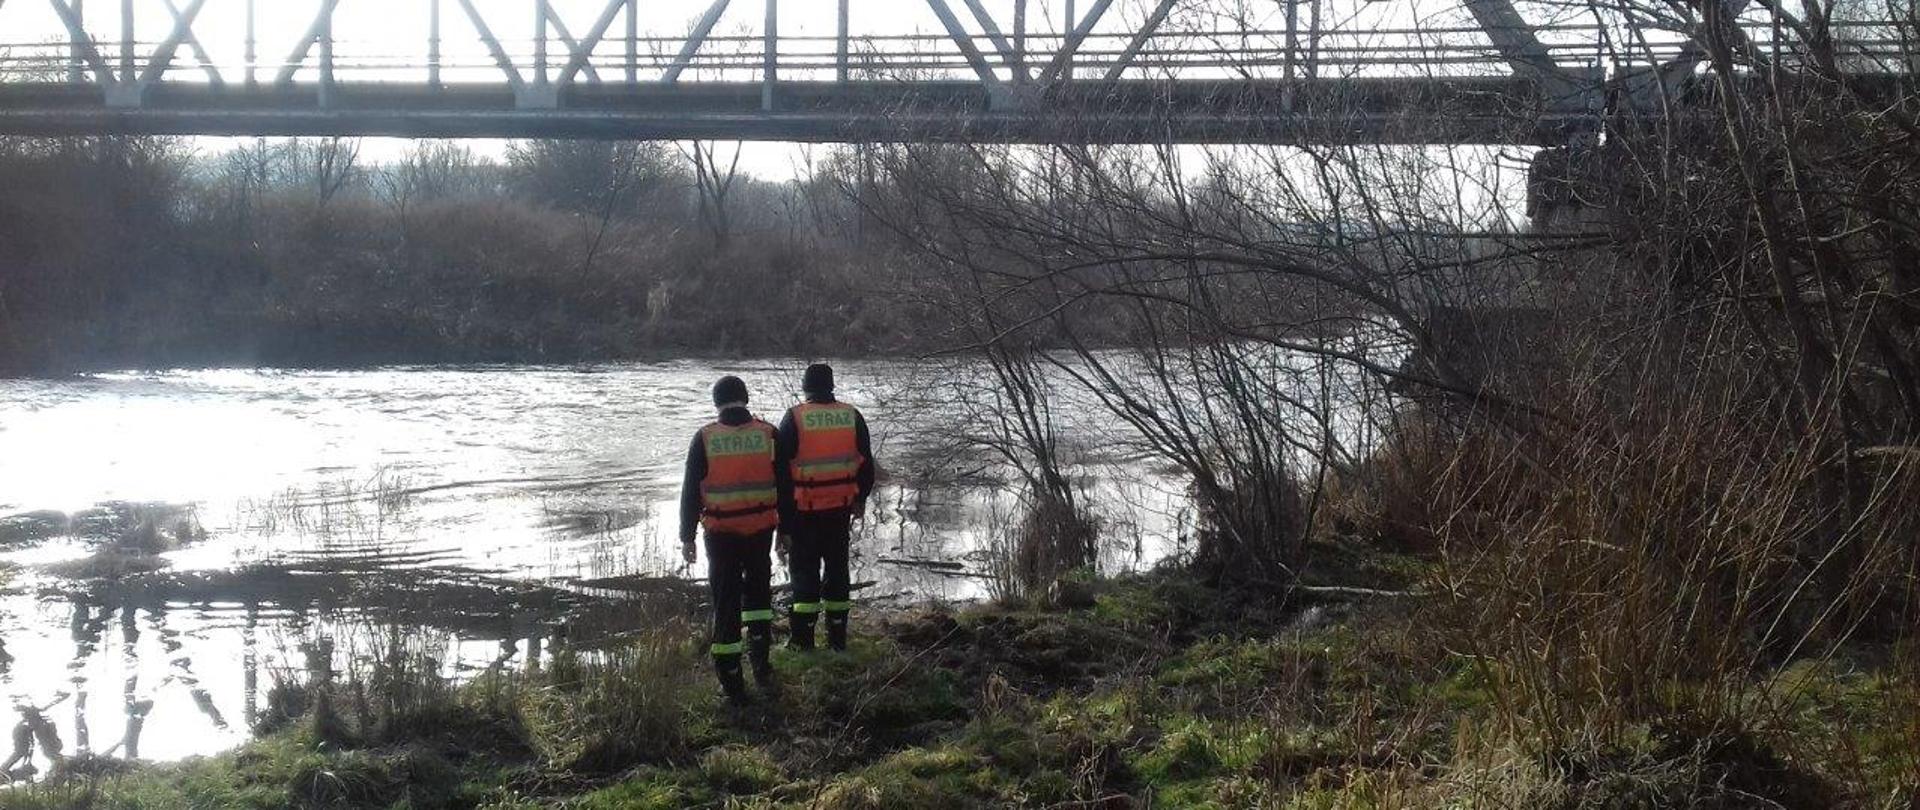 Dwóch strażaków nad rzeką w oddali most wokół pełno traw.